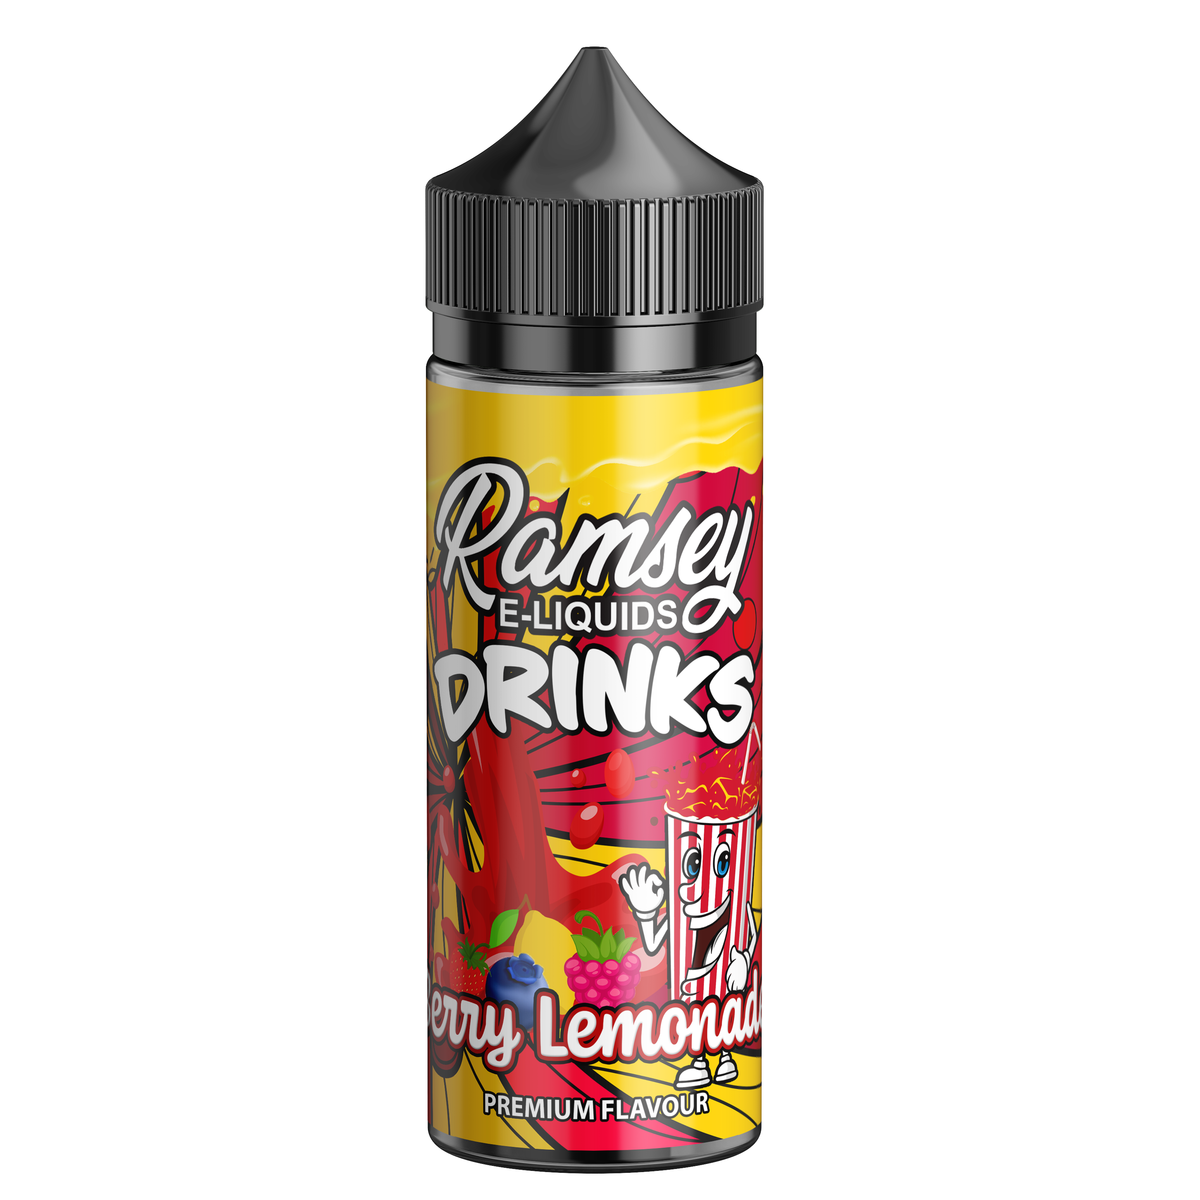 Ramsey E-Liquids Drinks Berry Lemonade 0mg 100ml Shortfill E-Liquid